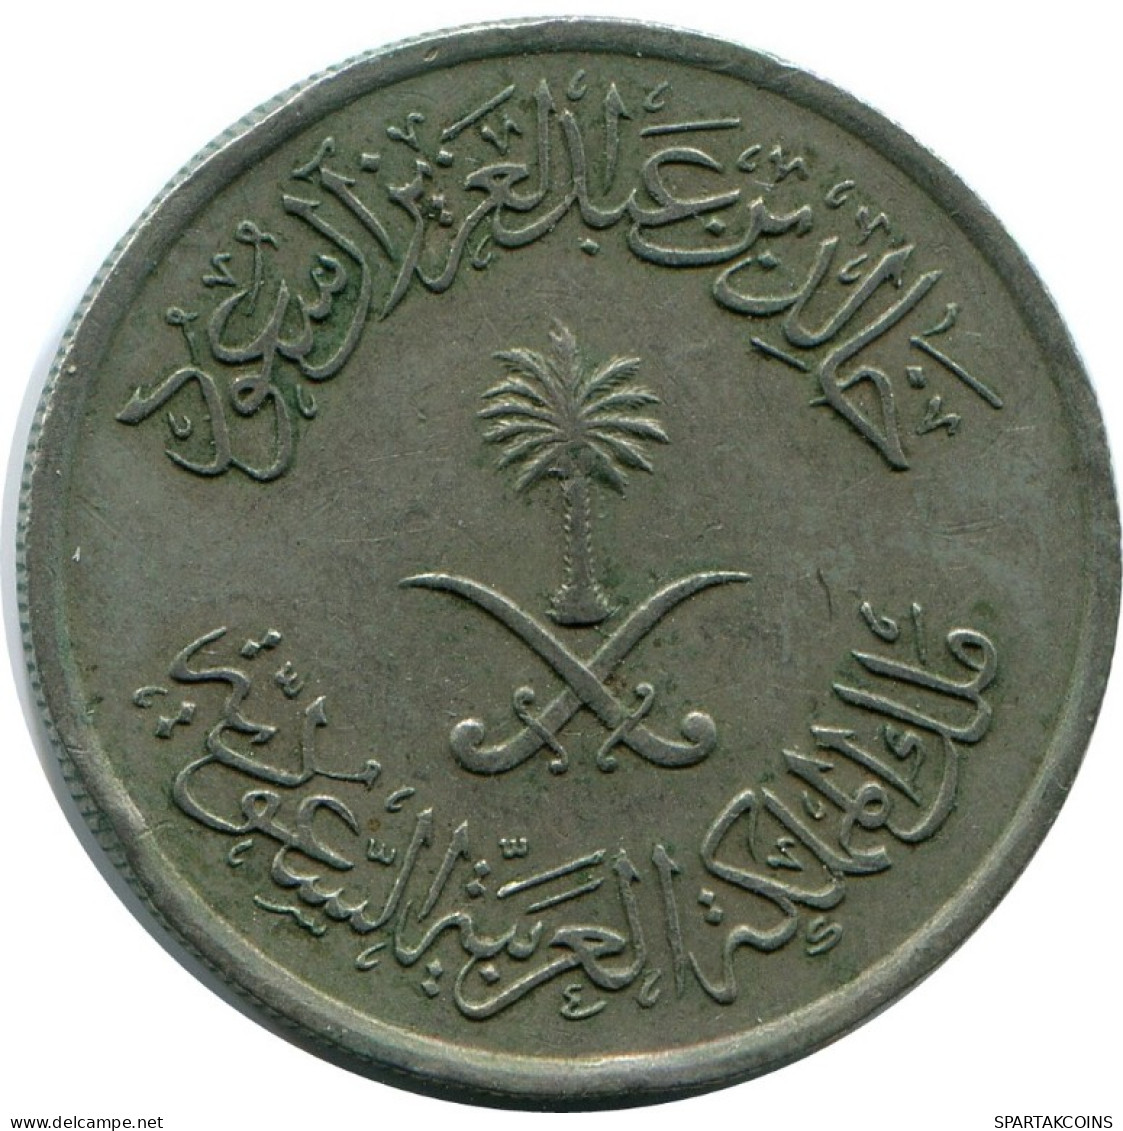 1/4 RIYAL 25 HALALAH 1980 SAUDI ARABIA Islamic Coin #AH828.U.A - Saudi-Arabien